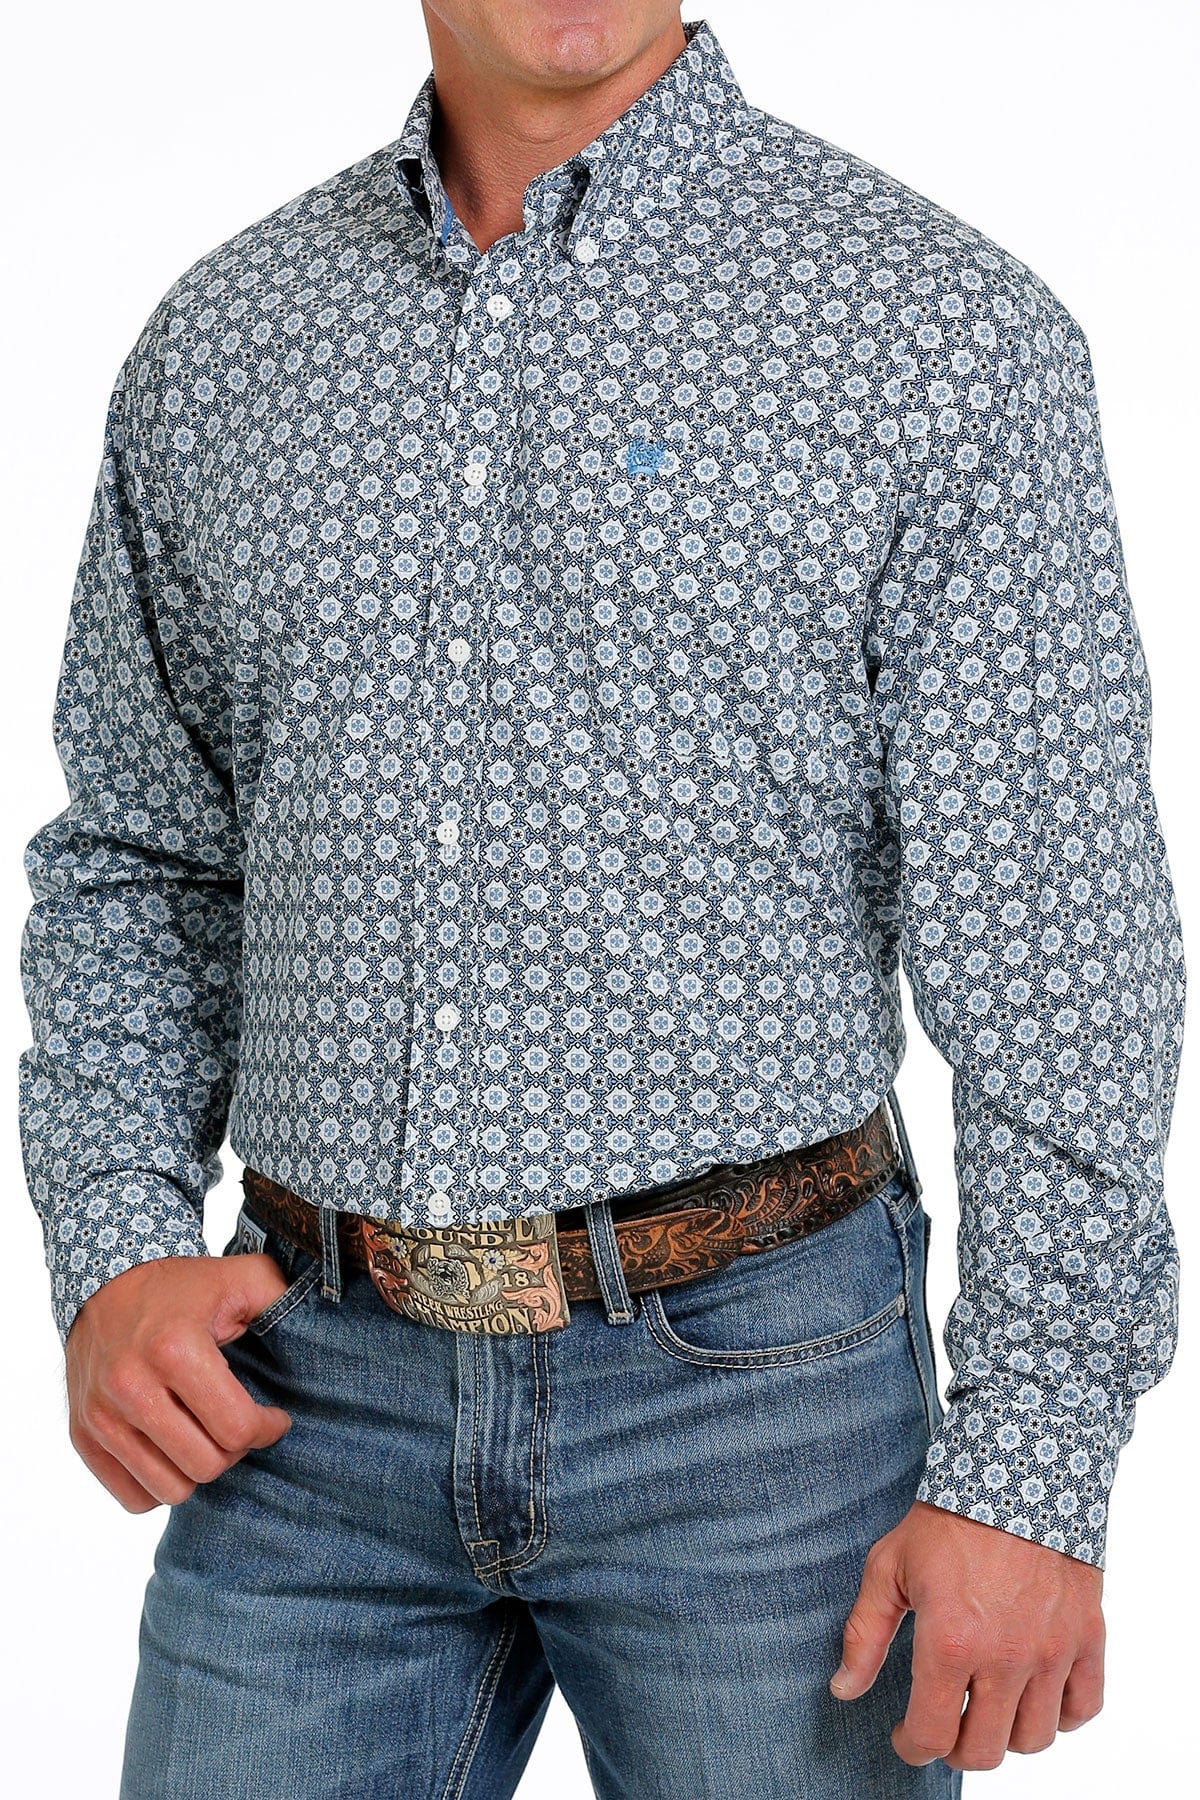 Cinch Boys Geometric Print Western Shirt XL